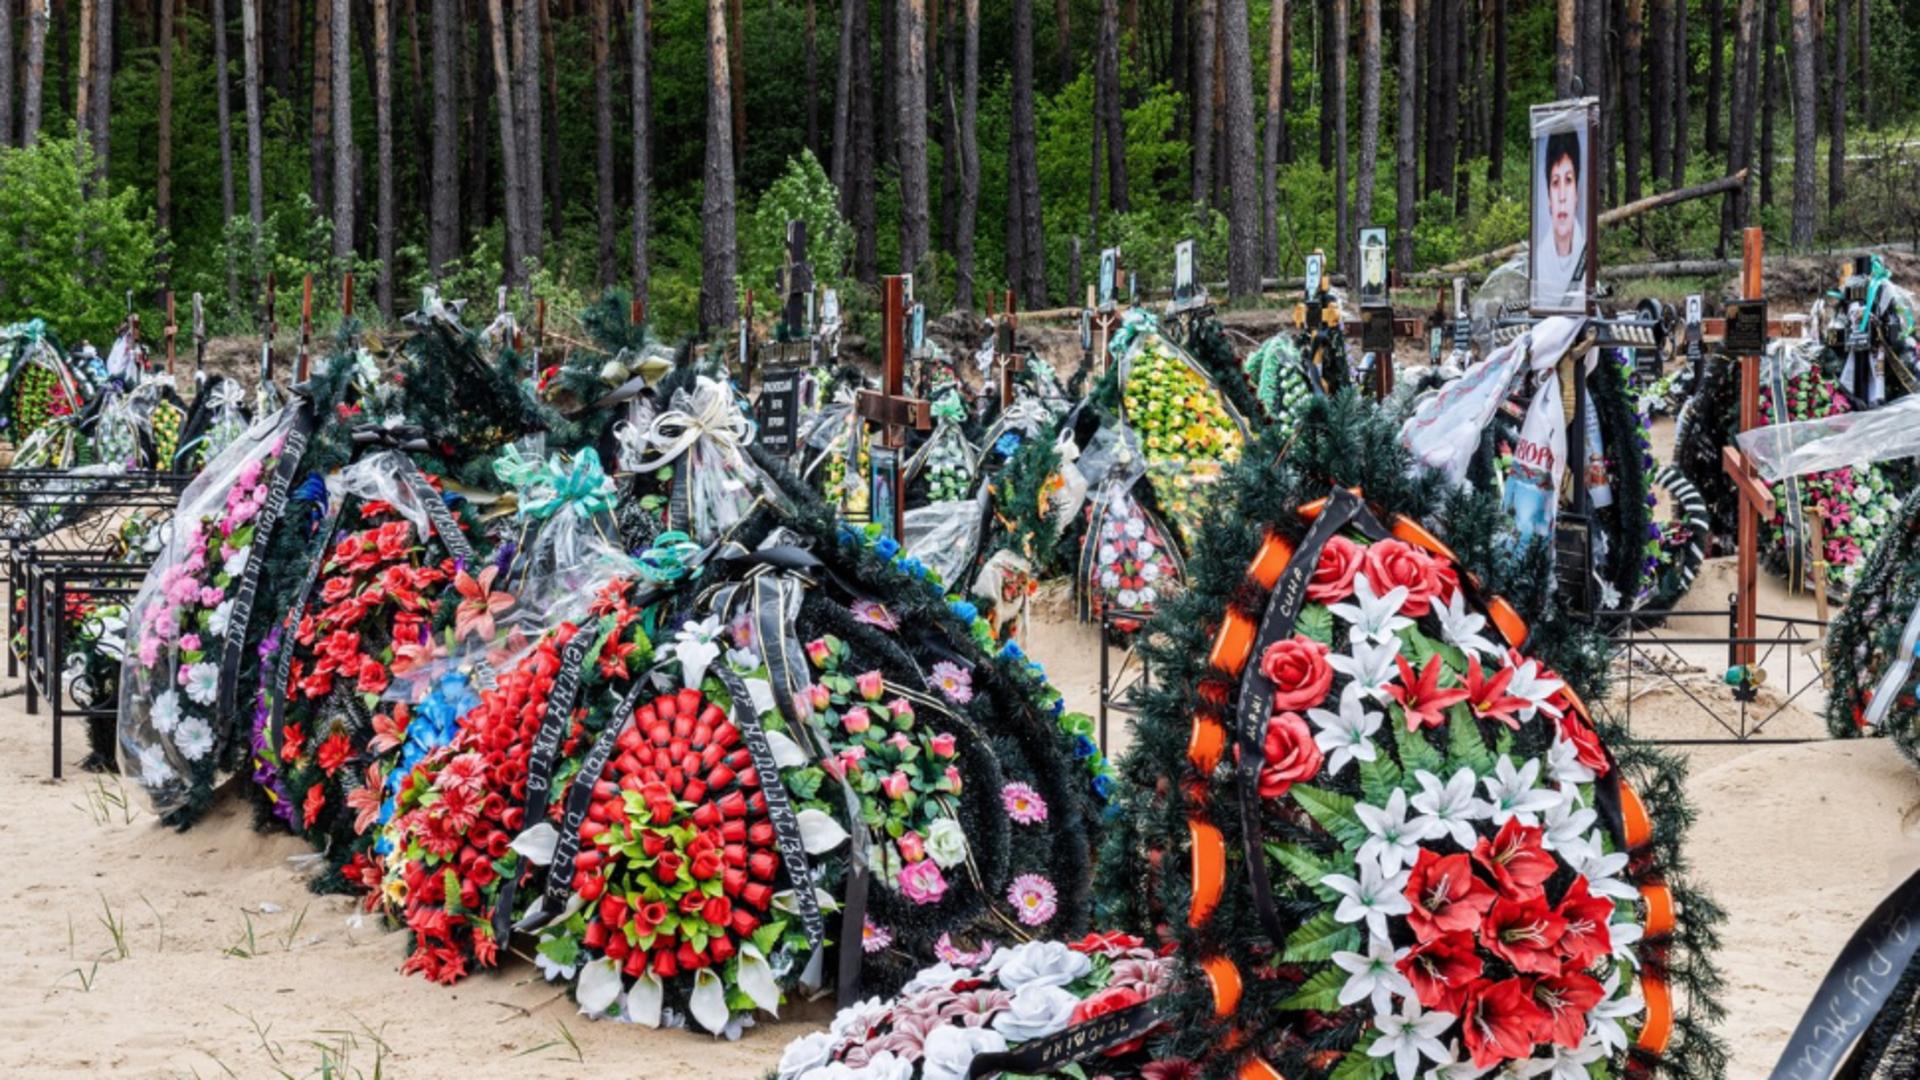 Război Ucraina. Cimitir în Bucha după atrocitățile rușilor Foto: Profi Media